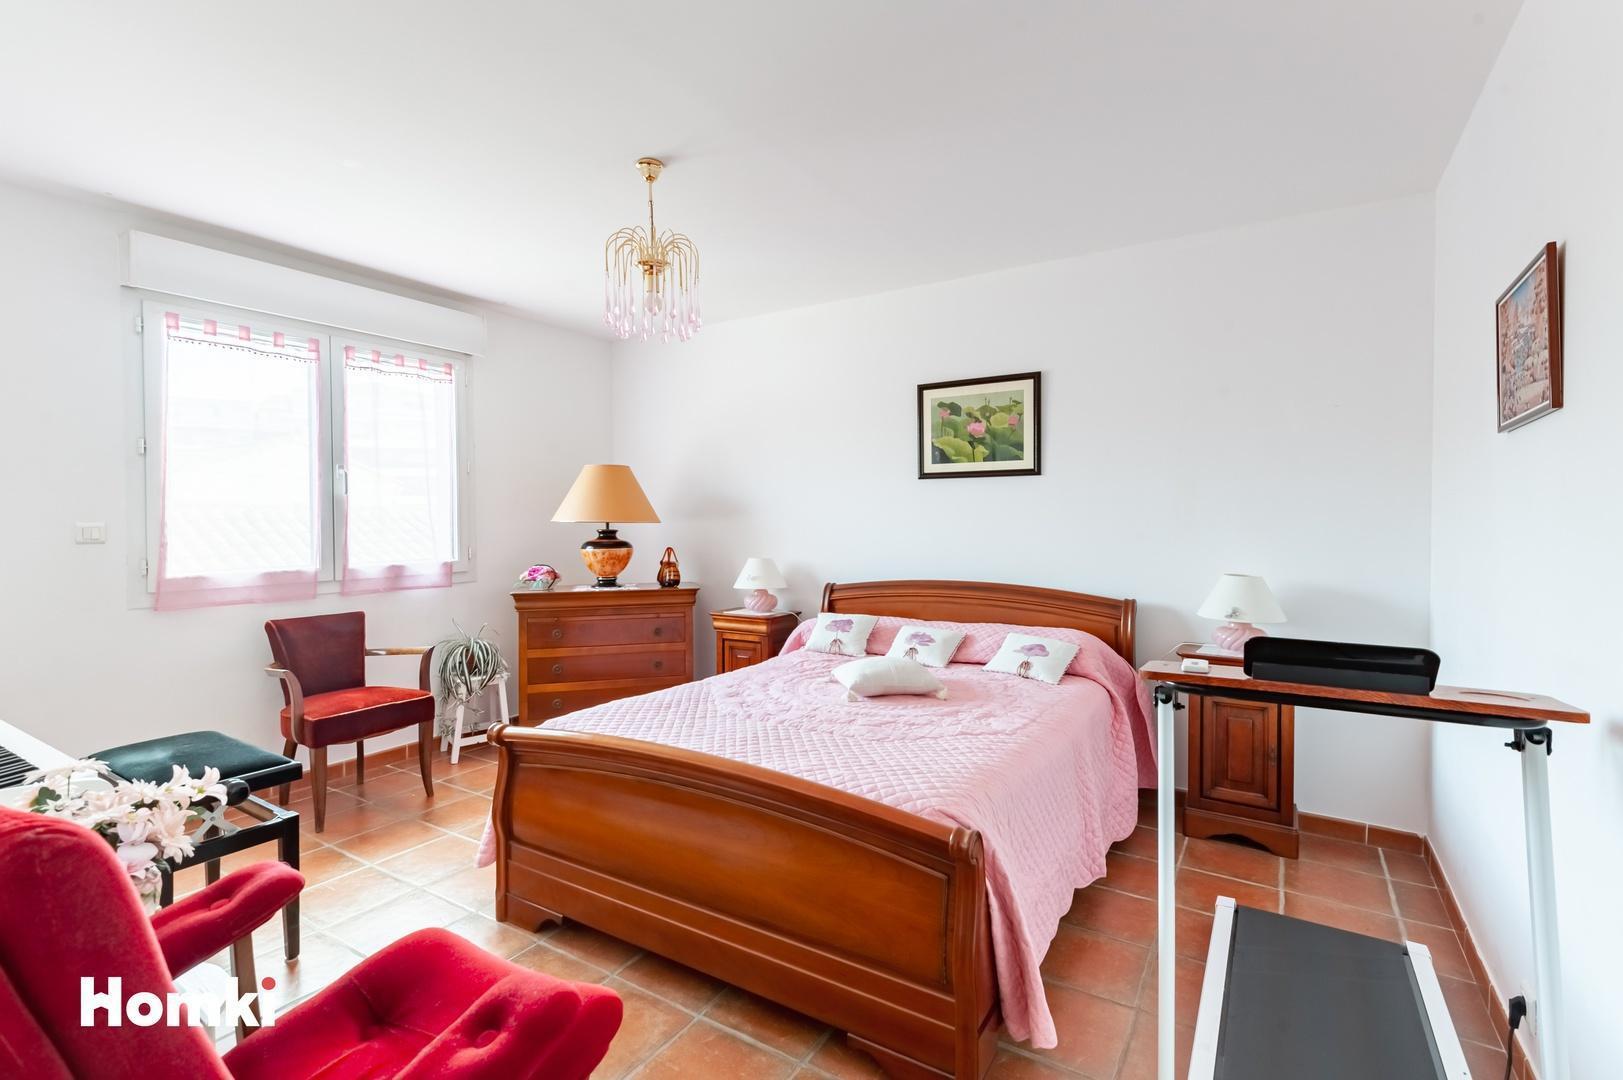 Homki - Vente Appartement  de 111.0 m² à Istres 13800